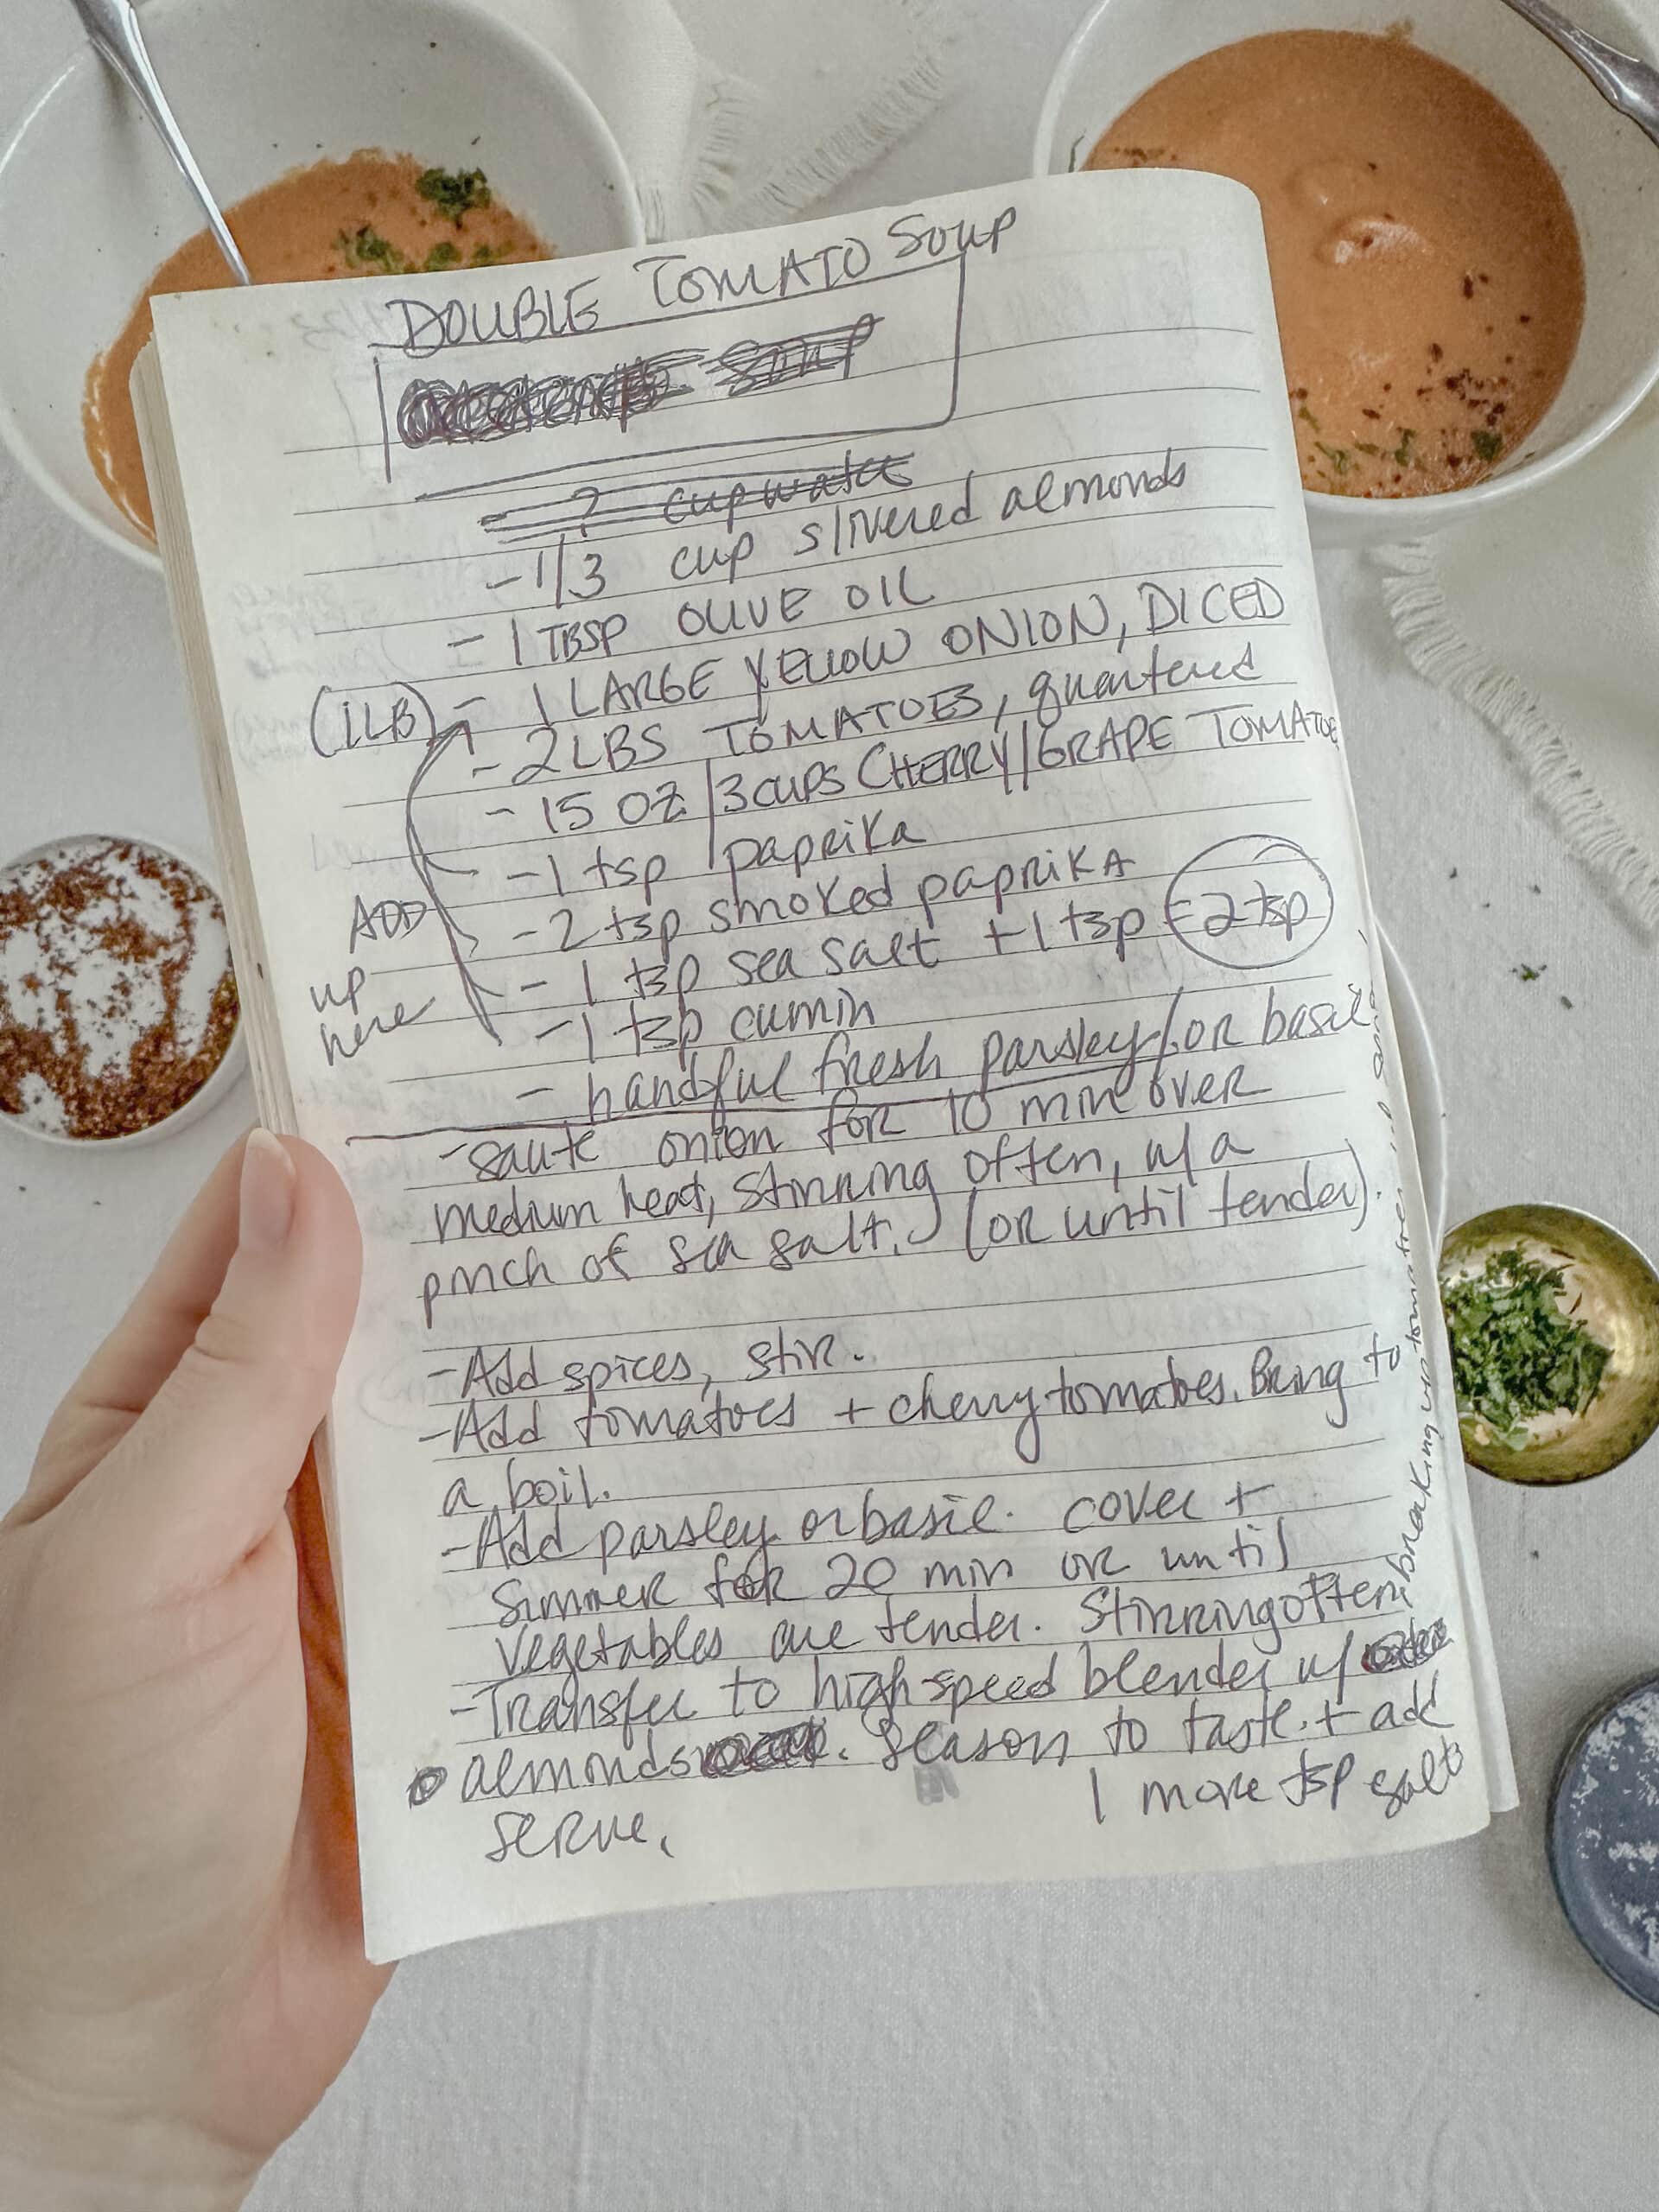 recipe card handwritten for the double tomato soup recipe